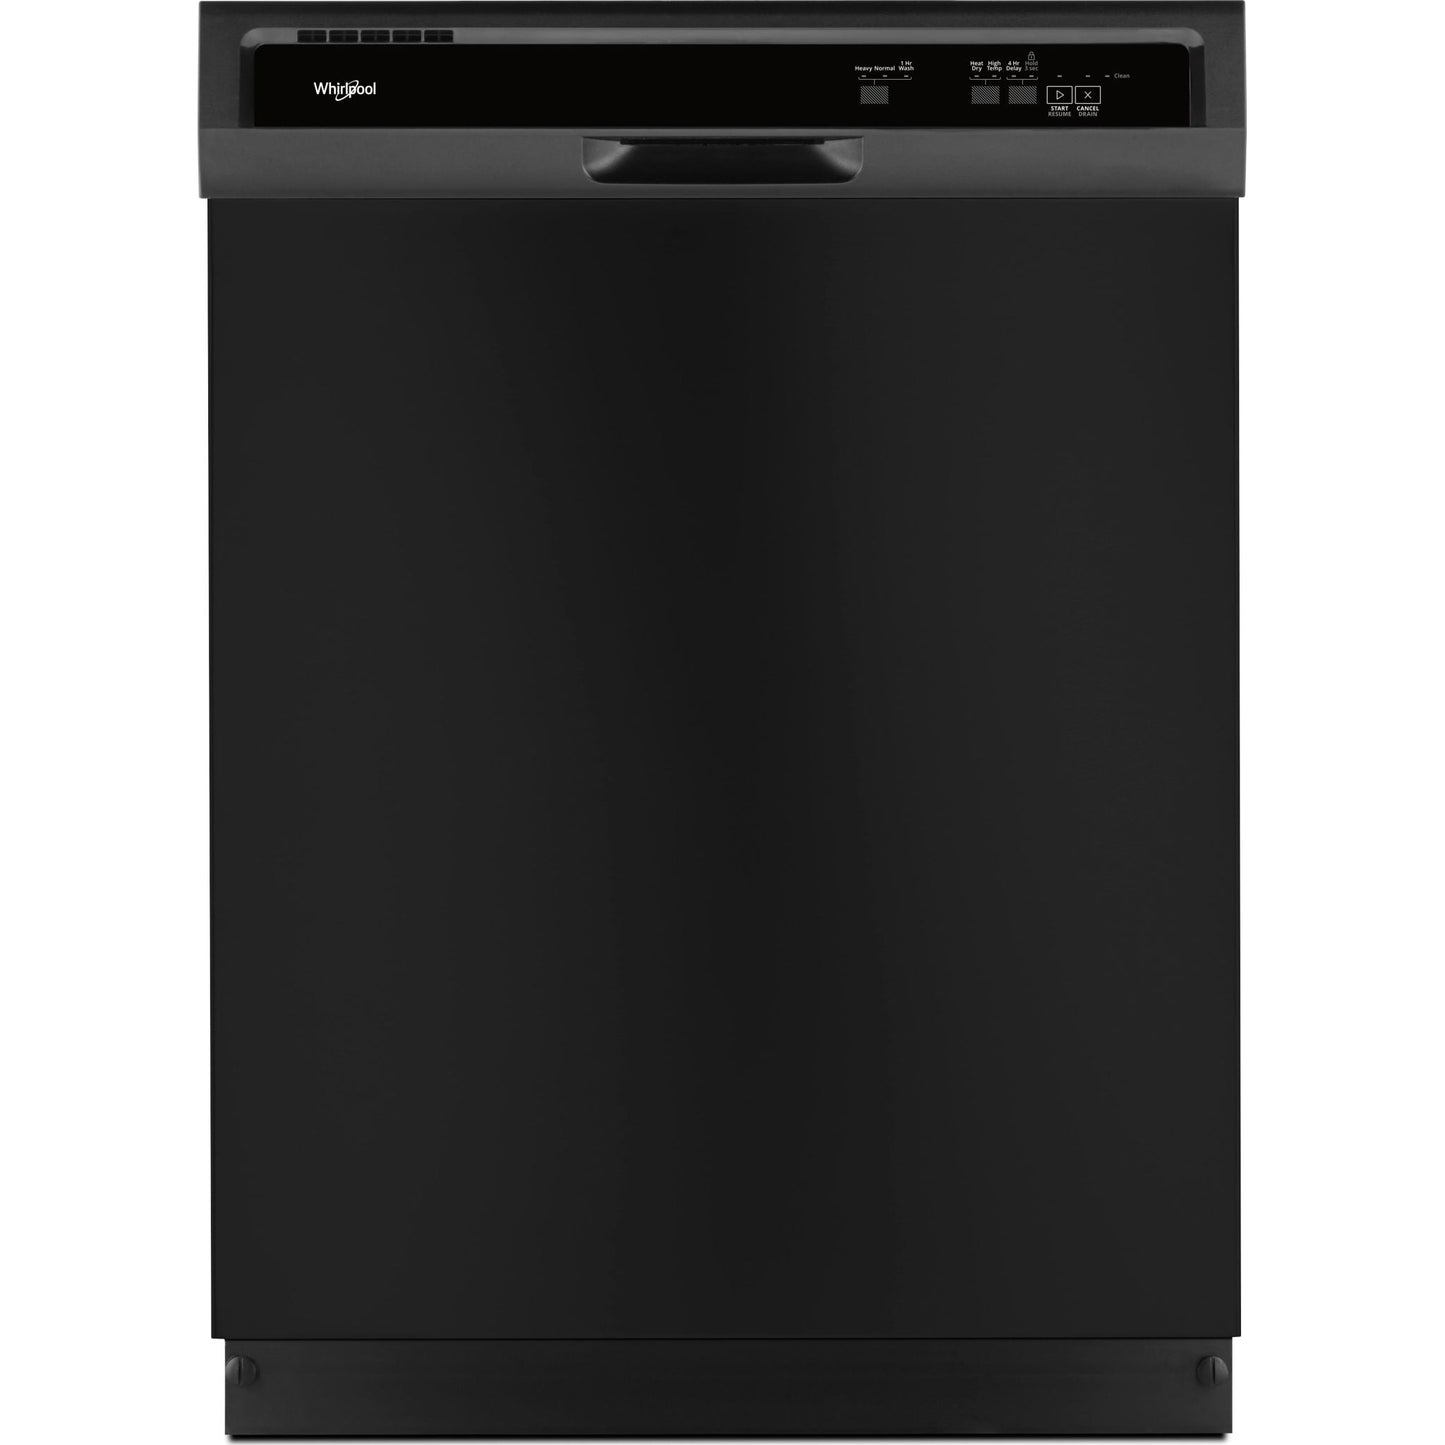 Whirlpool Dishwasher Plastic Tub (WDF330PAHB) - Black